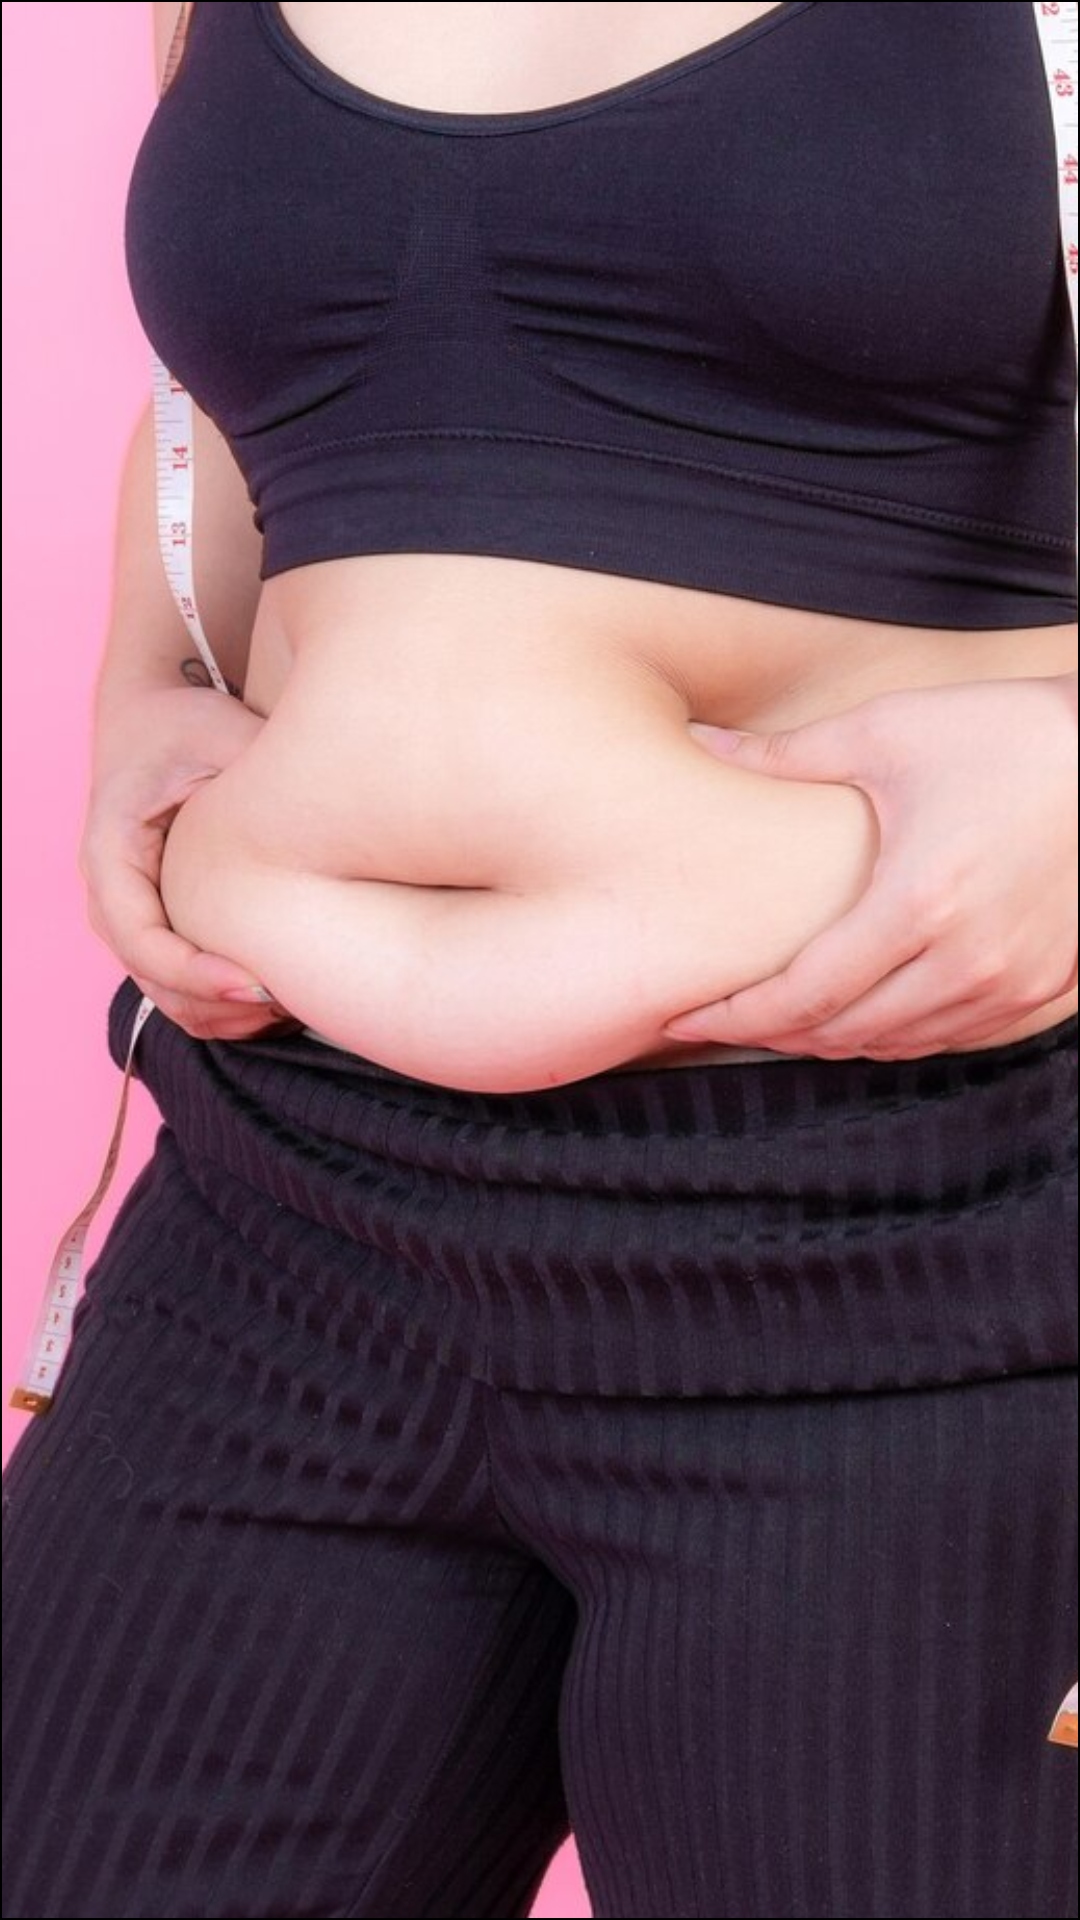 मोटापे से आजकल ज्यादातर लोग परेशान हैं, वजन घटाने के लिए लोग रोटी खाना छोड़ देते हैं